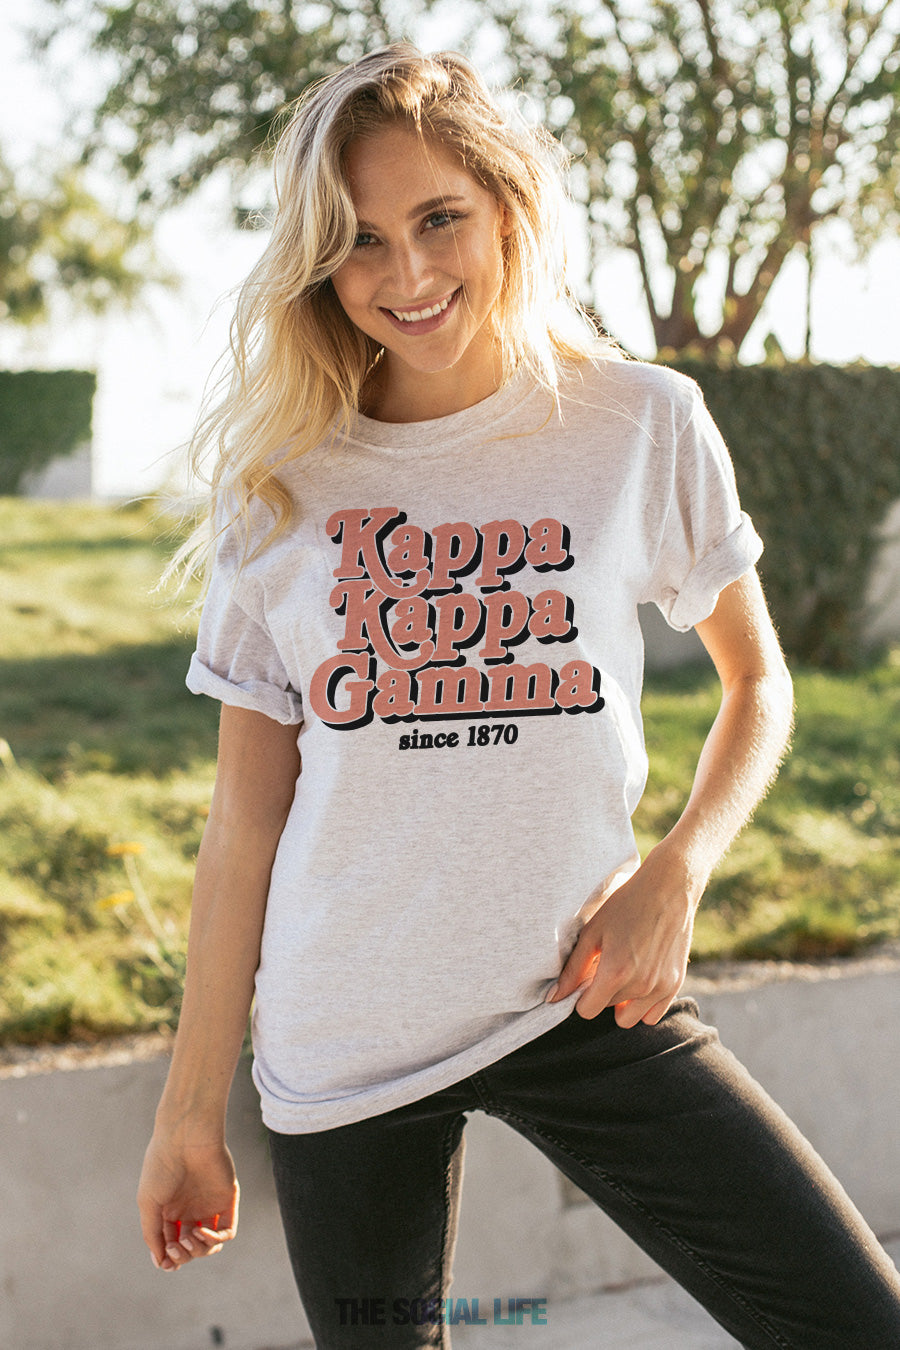 Kappa Kappa Gamma Jagger Tee – The Social Life